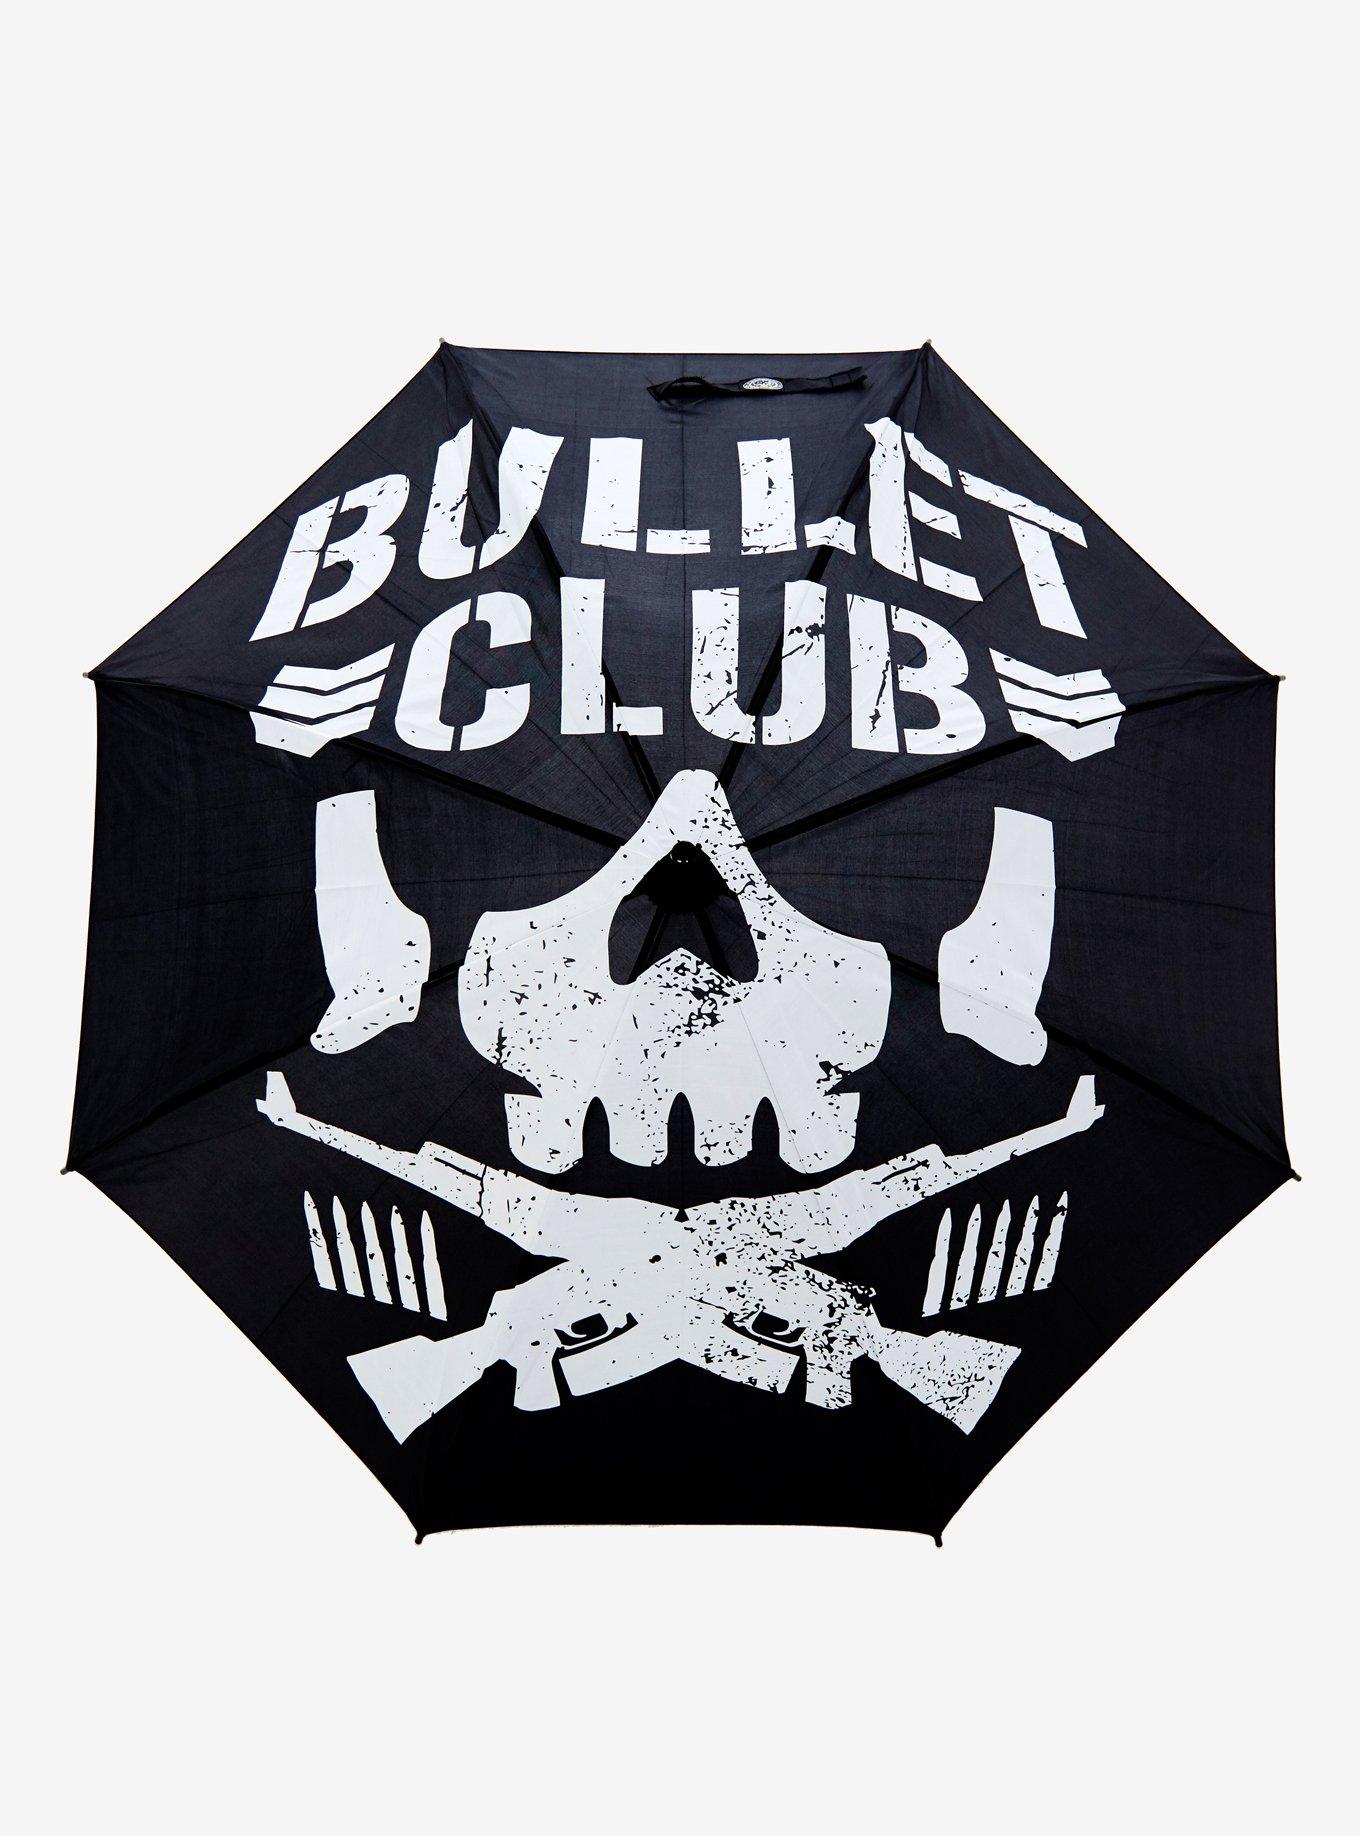 New Japan Pro-Wrestling Bullet Club Logo Stick Umbrella, , hi-res